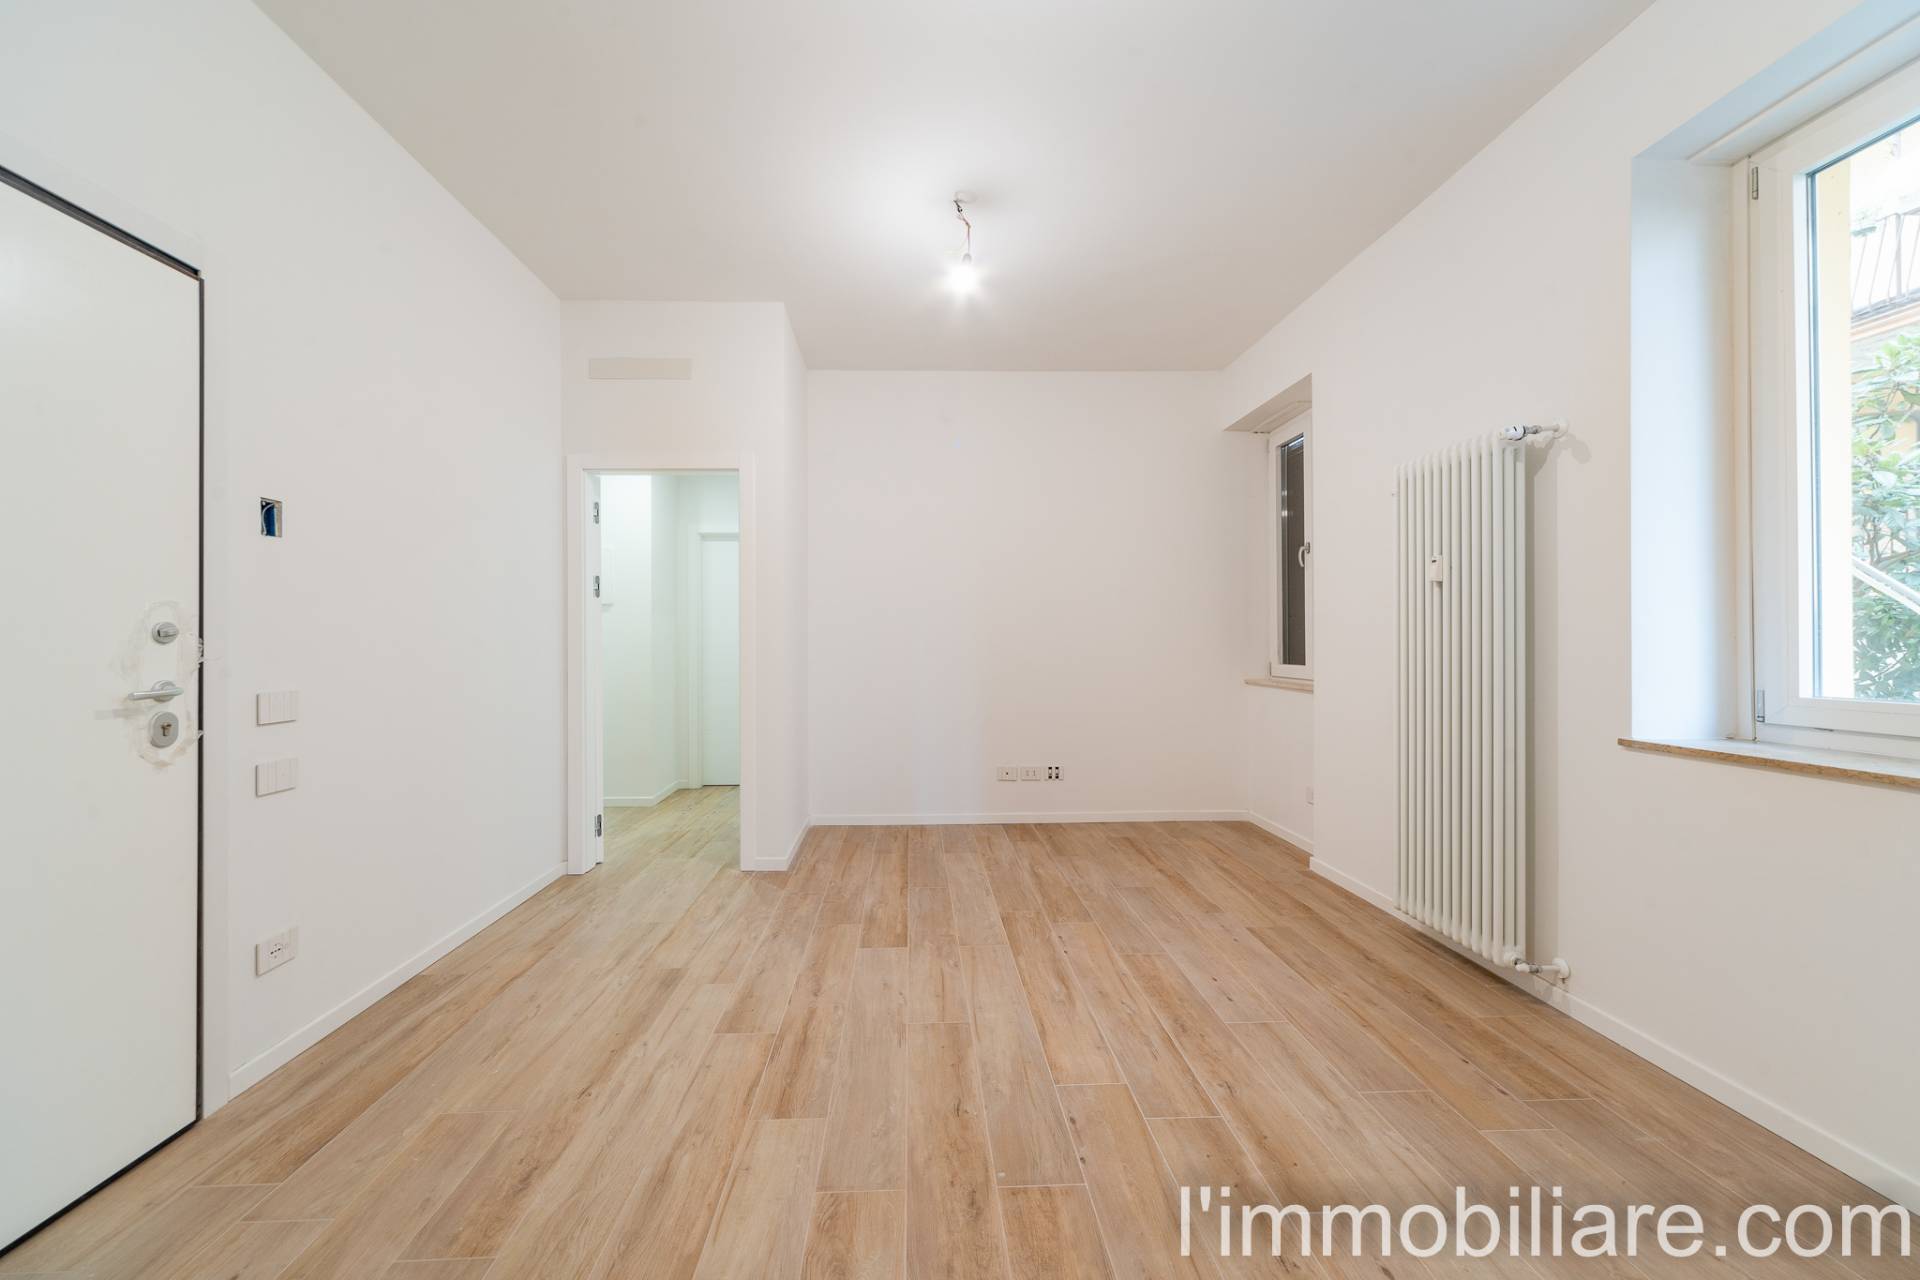 Appartamento in Vendita a Verona: 2 locali, 55 mq - Foto 1